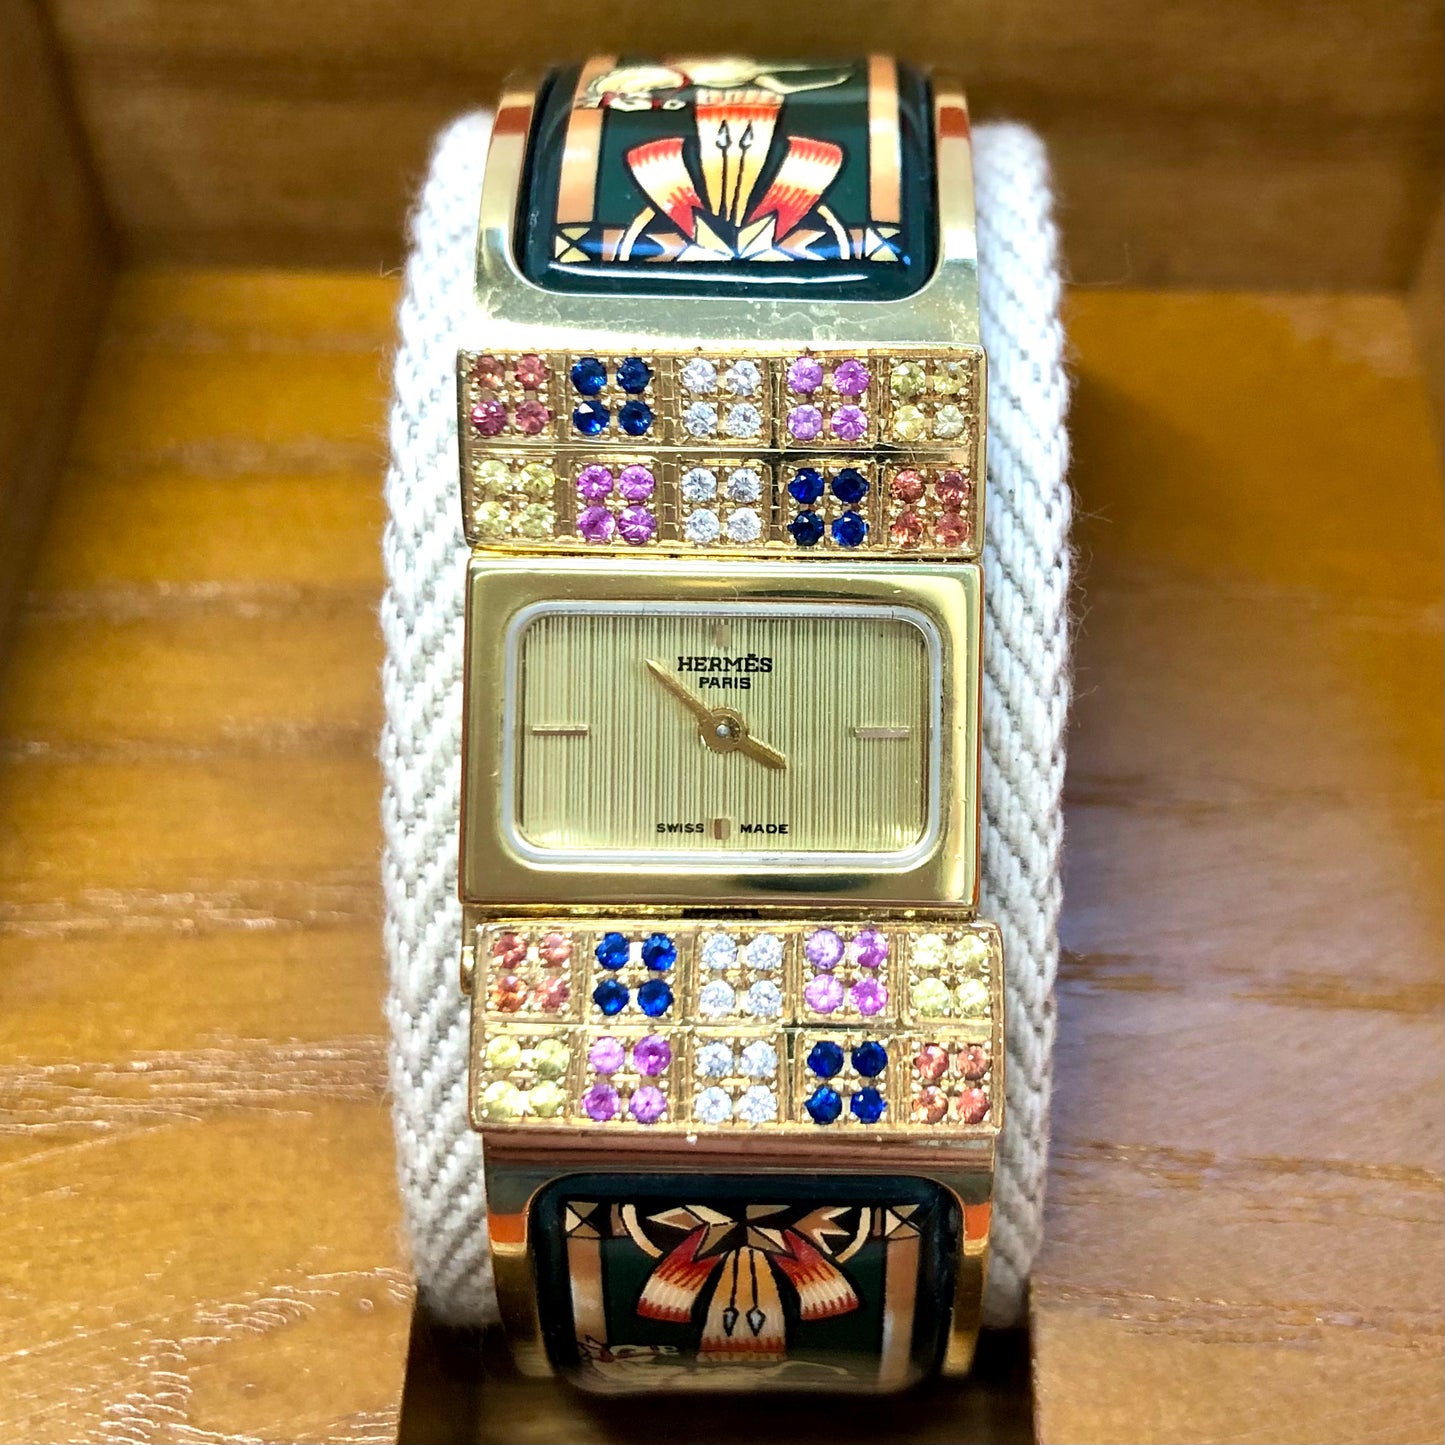 HERMÈS LOQUET Quartz 20mm Gold-Plated Multi-Color SAPPHIRES & DIAMONDS Watch